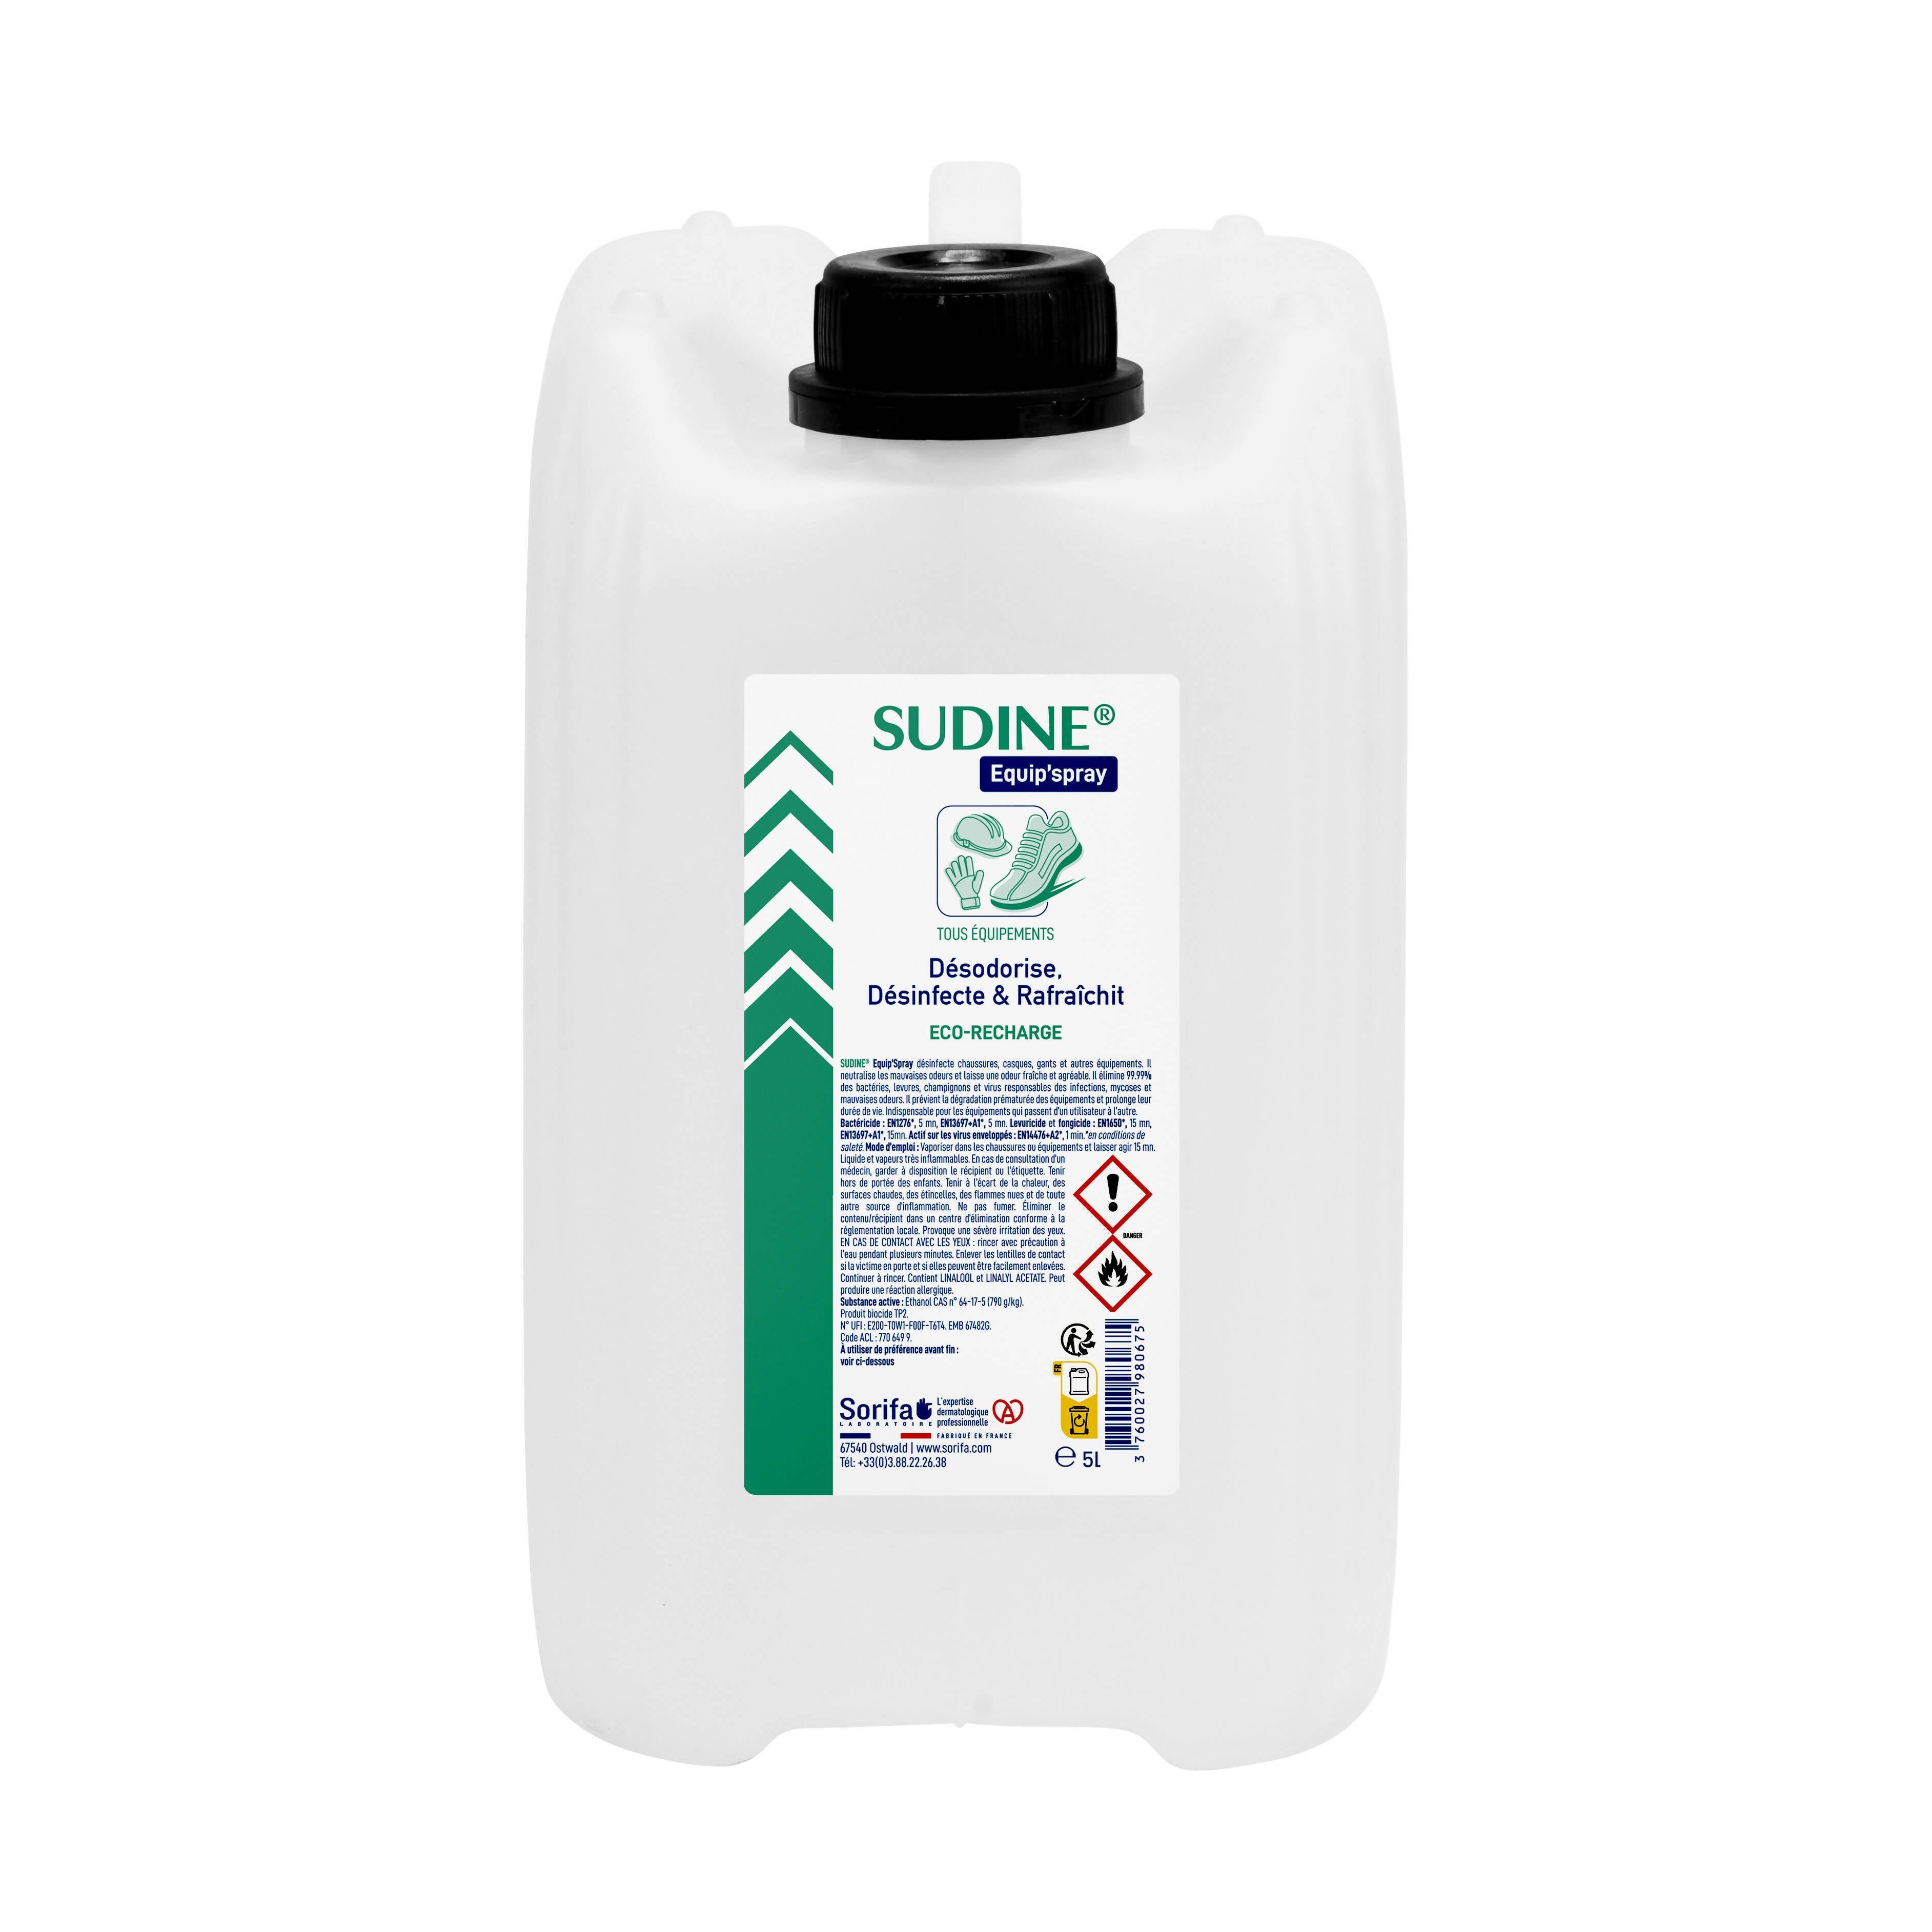 SORIFA - 2er-Set - Sudine Equip'spray - Desodoriert, desinfiziert, erfrischt - Schuhe, Helme, Handschuhe, Ausrüstung - 5L Nachfüllpackung für SUDINE Equip'spray 50 und 125 ml oder für das 1L SORIFA Spray